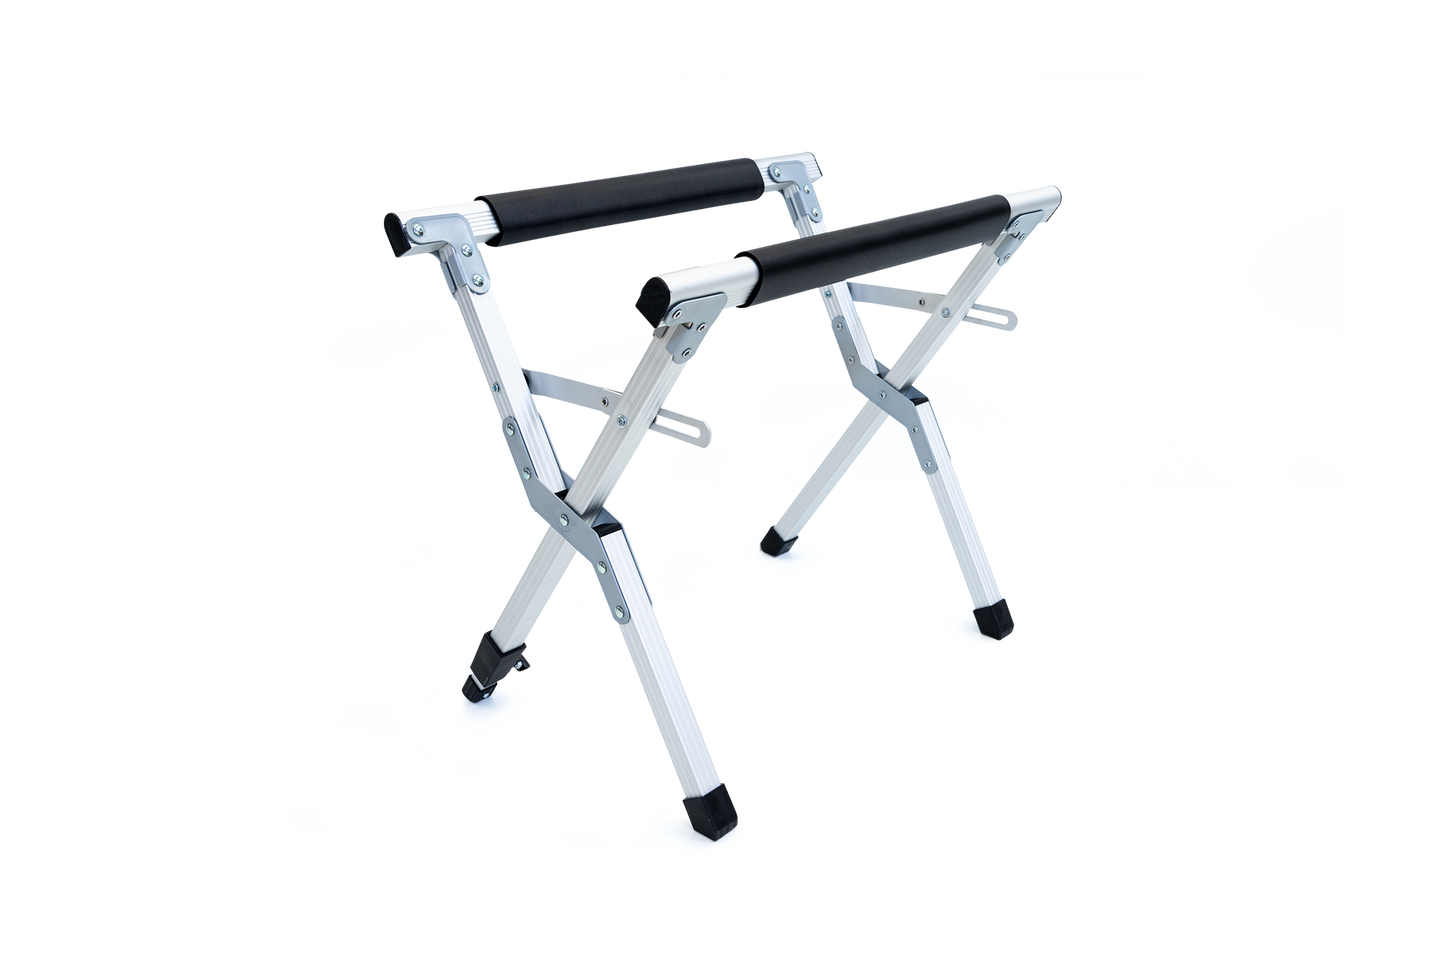 Flatkit – foldable stand